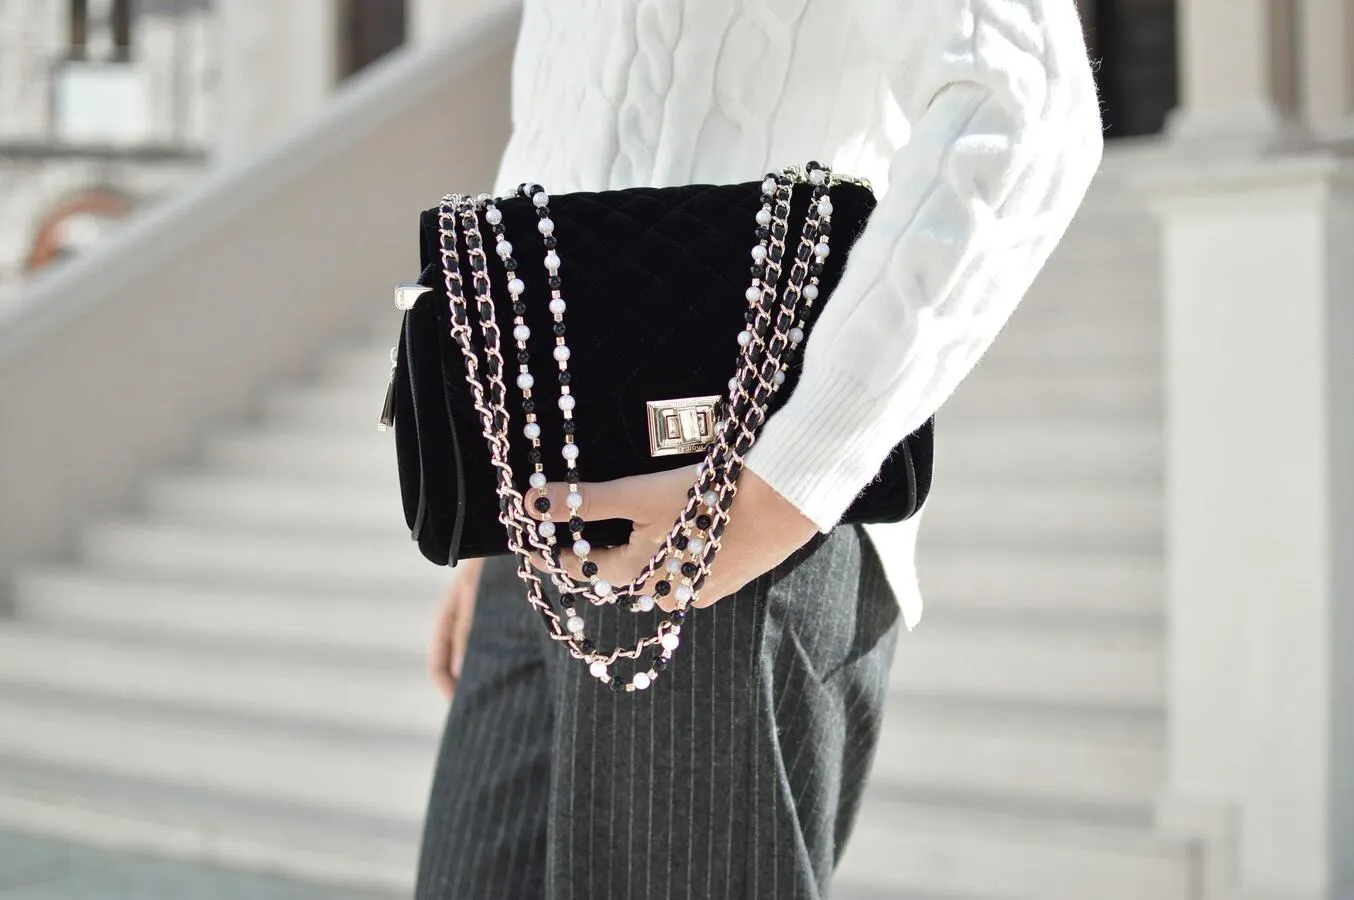 Woman with a stylish handbag